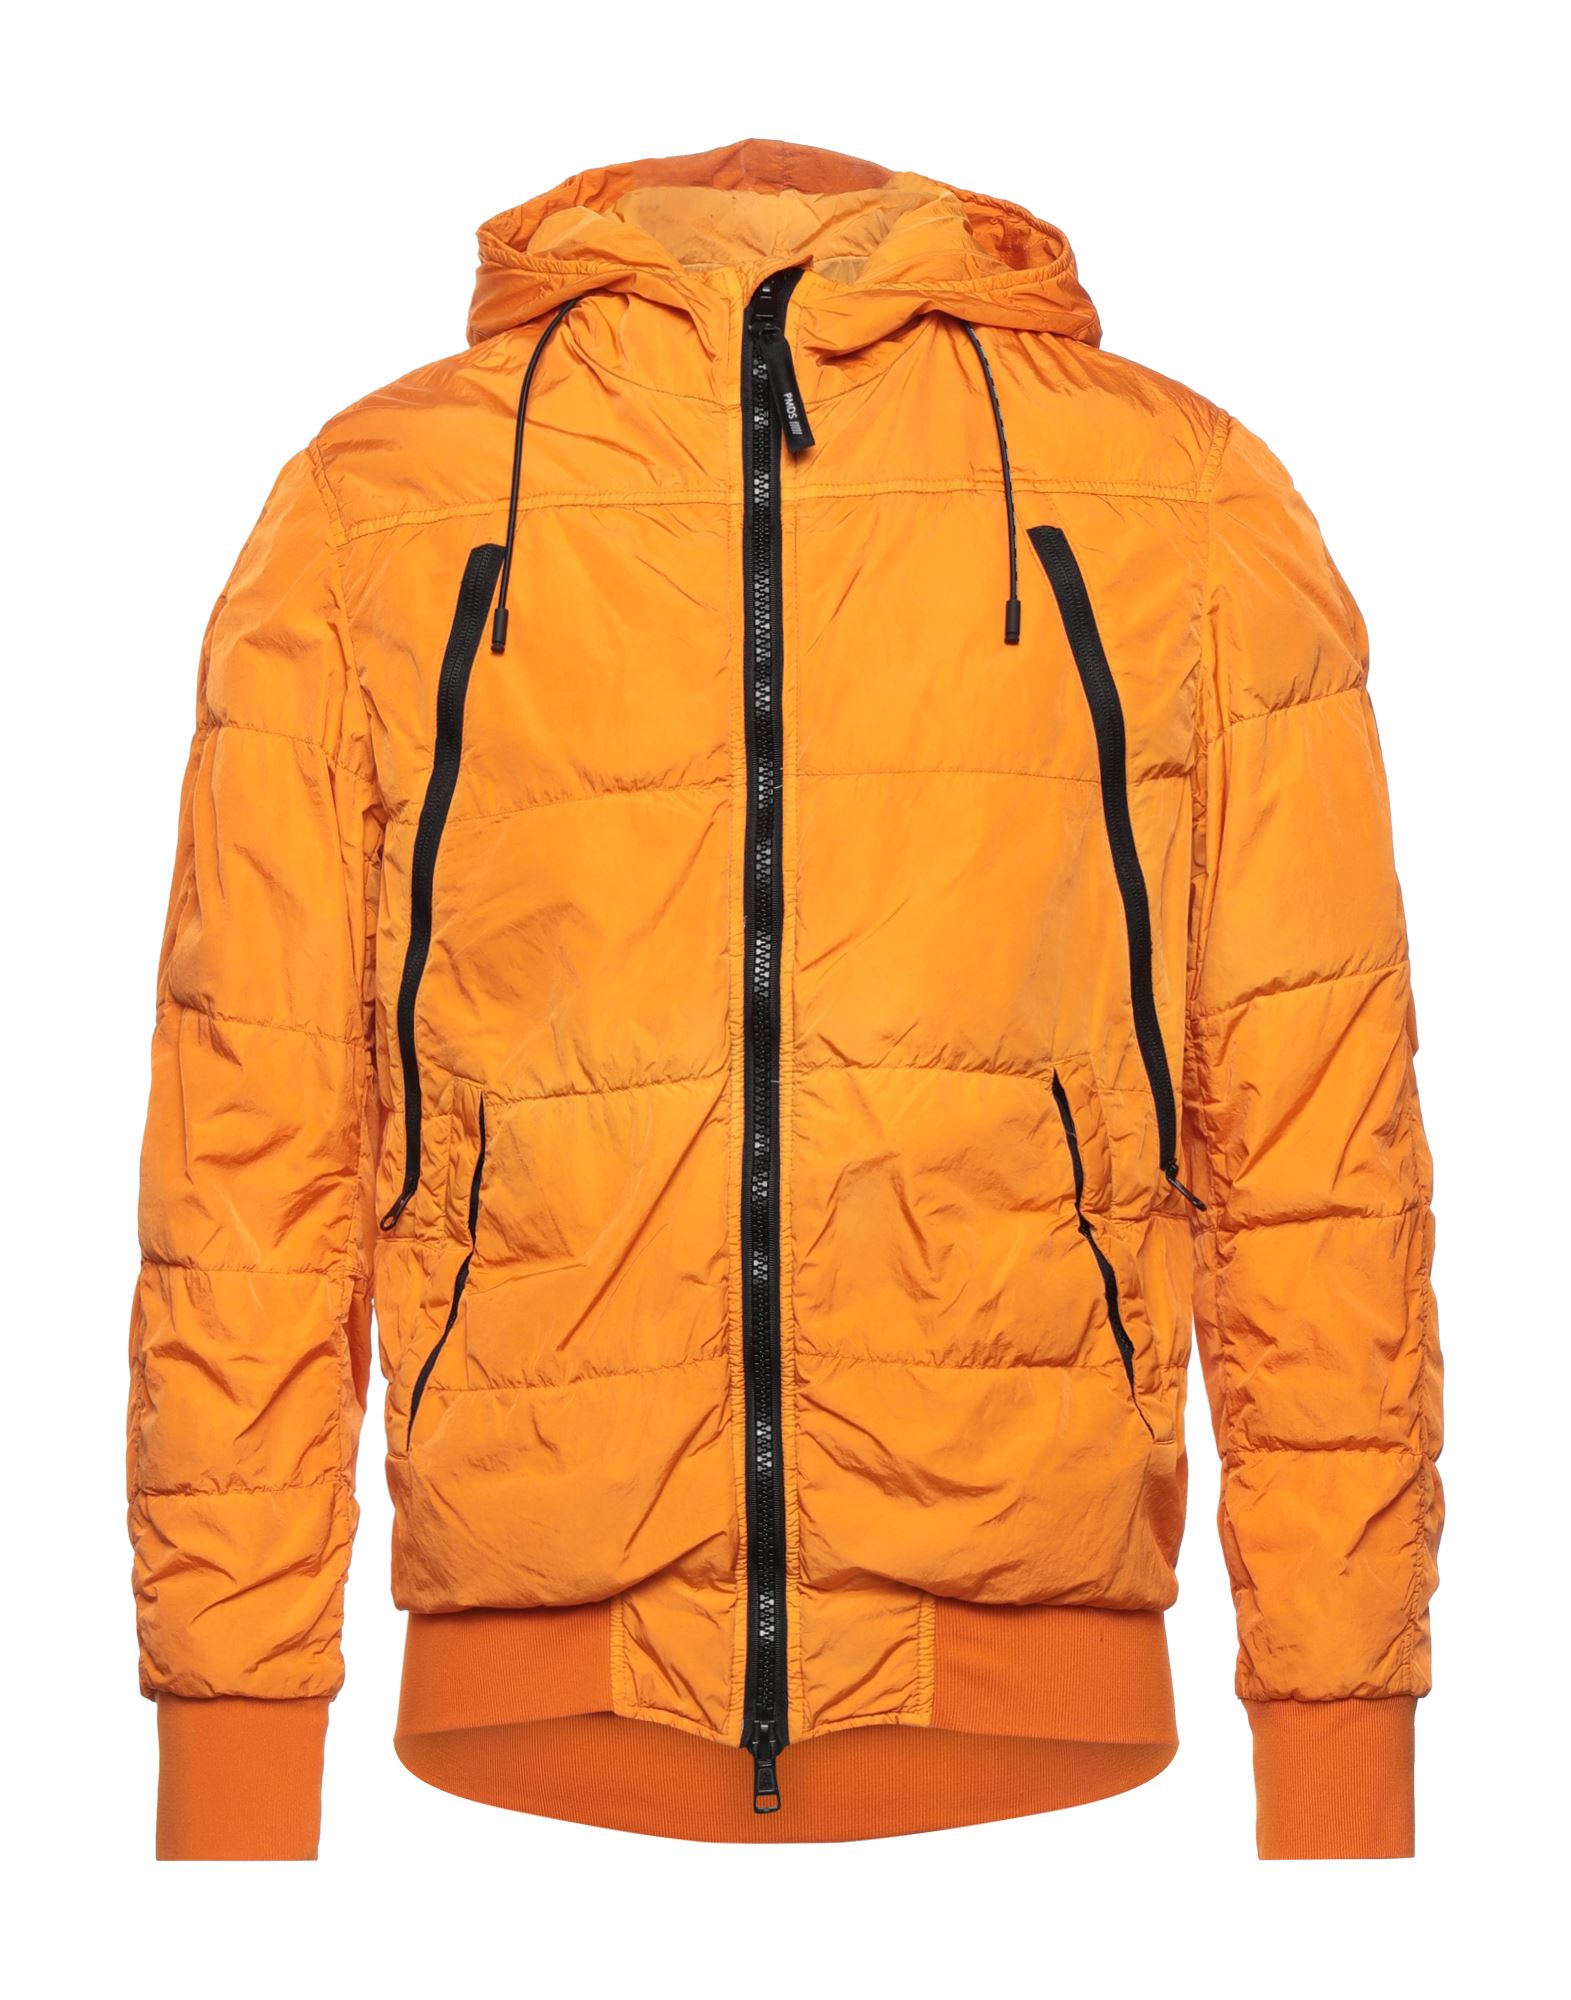 Pmds Premium Mood Denim Superior Jackets In Orange